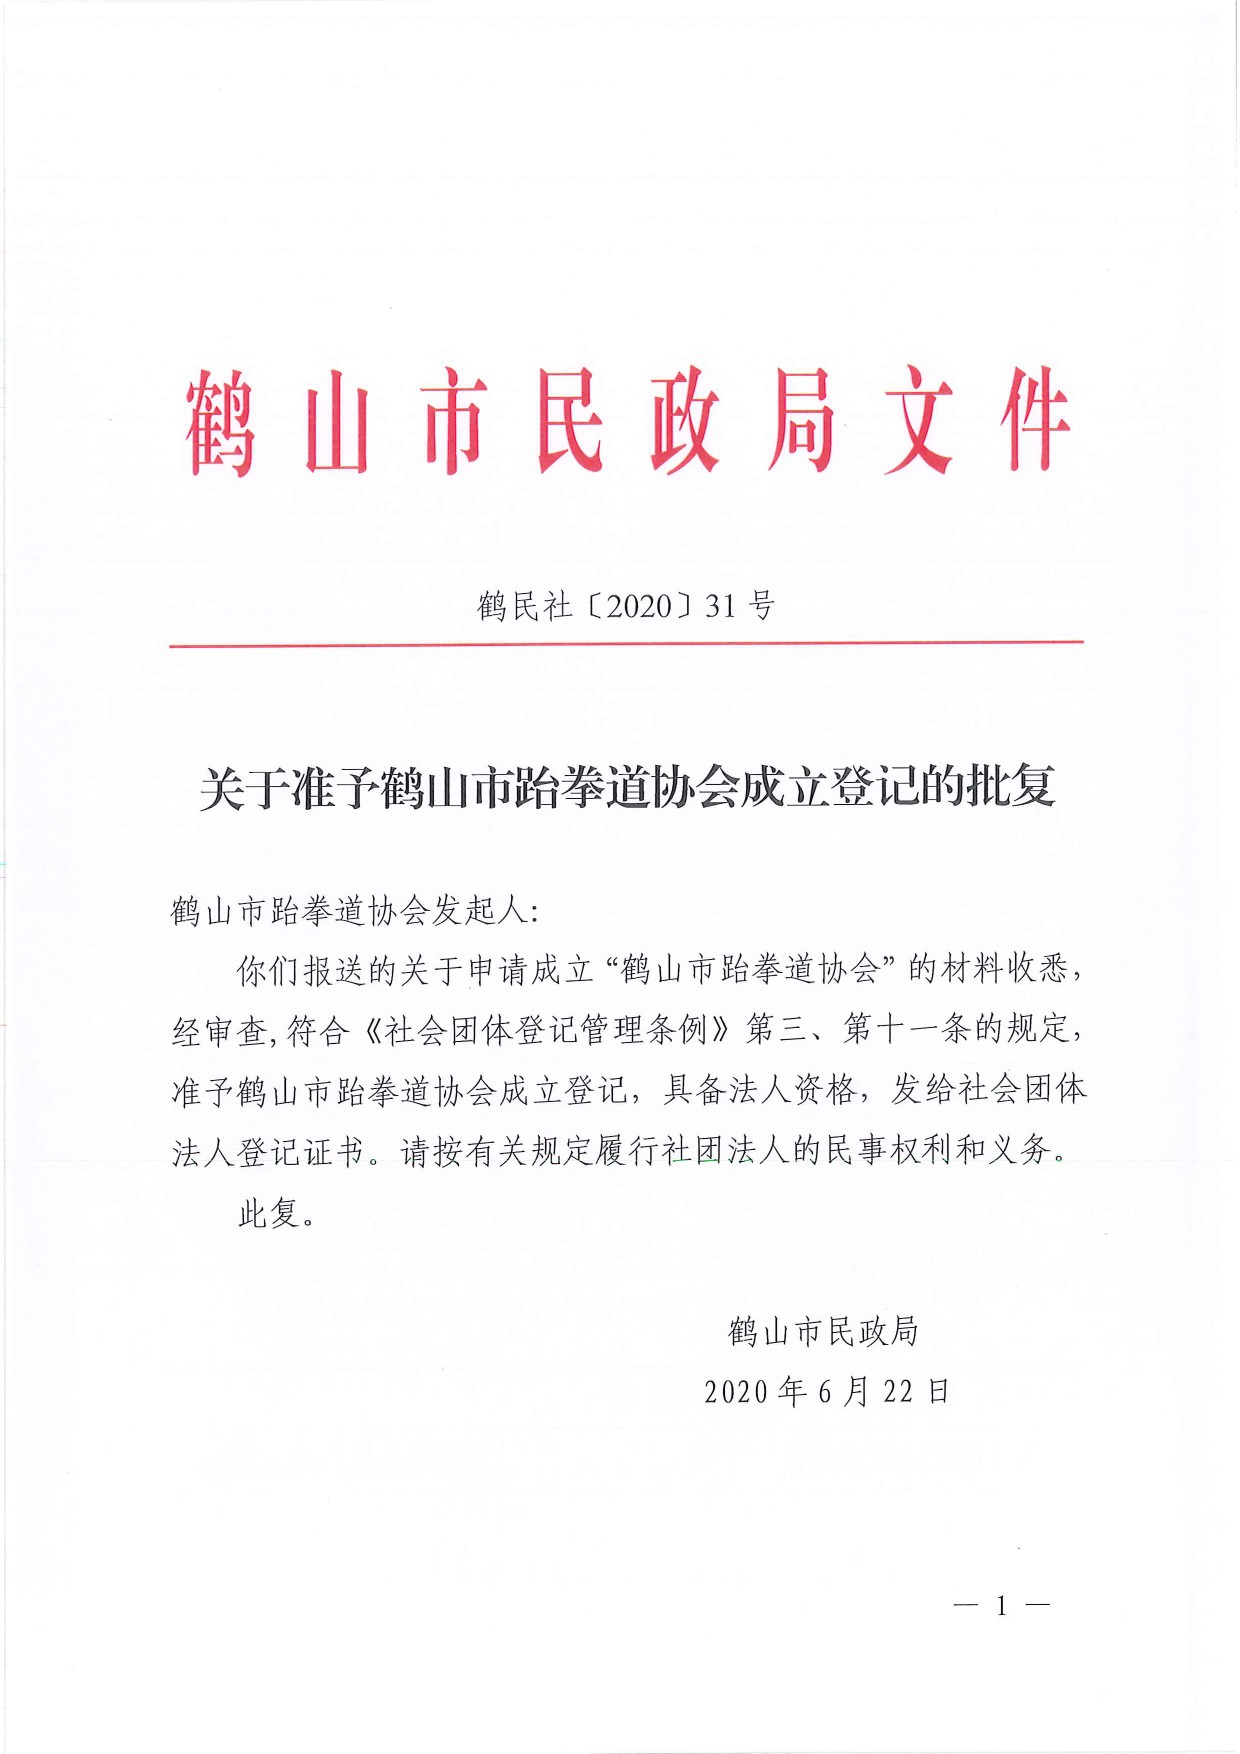 鹤民社〔2020〕31号关于准予鹤山市跆拳道协会成立登记的批复-1.jpg